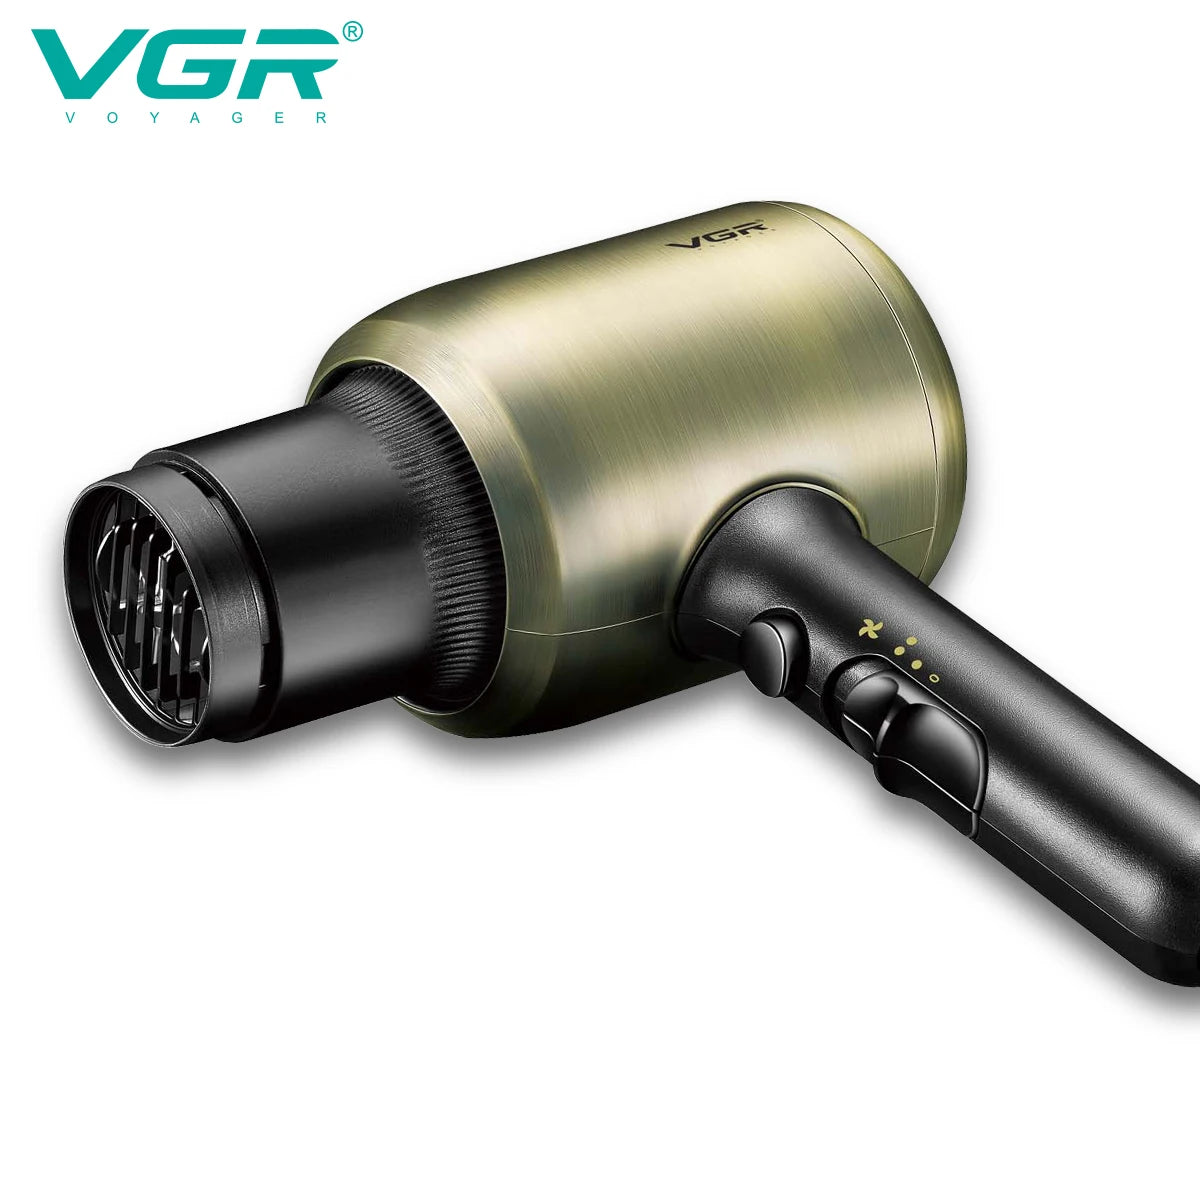 V-453 / VGR Hair dryer 2200watt with Overheating Protection hair Dryer / 2200 watt / BLACK